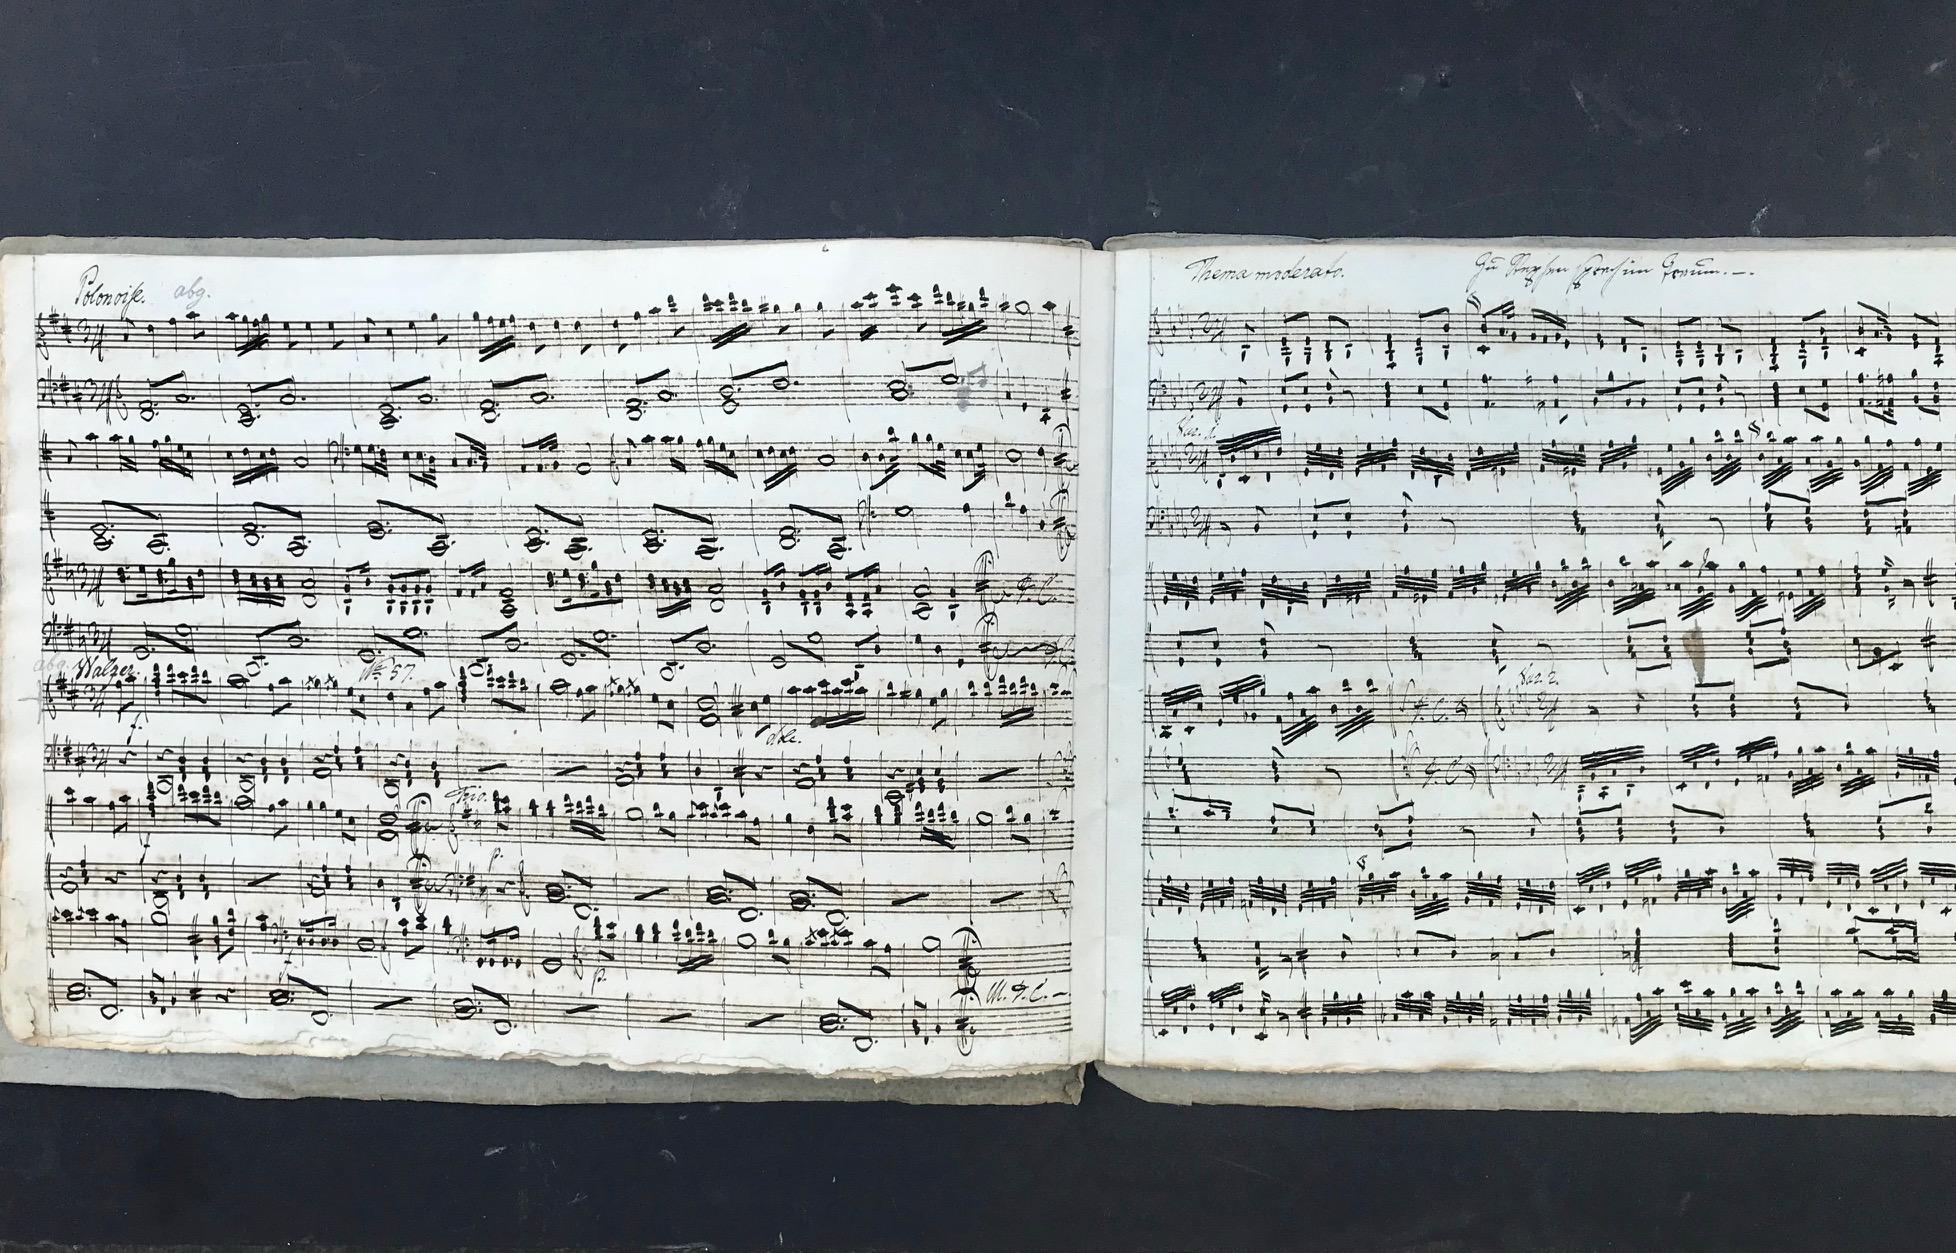 Il s'agit d'une partition manuscrite du XVIIIe siècle de compositions pour piano de Wolfgang Amadeus Mozart (1761-1791) et Ignaz Pleyel (1757-1831). Ce manuscrit musical est une copie de notation manuscrite à l'encre sur du papier lourd fait à la